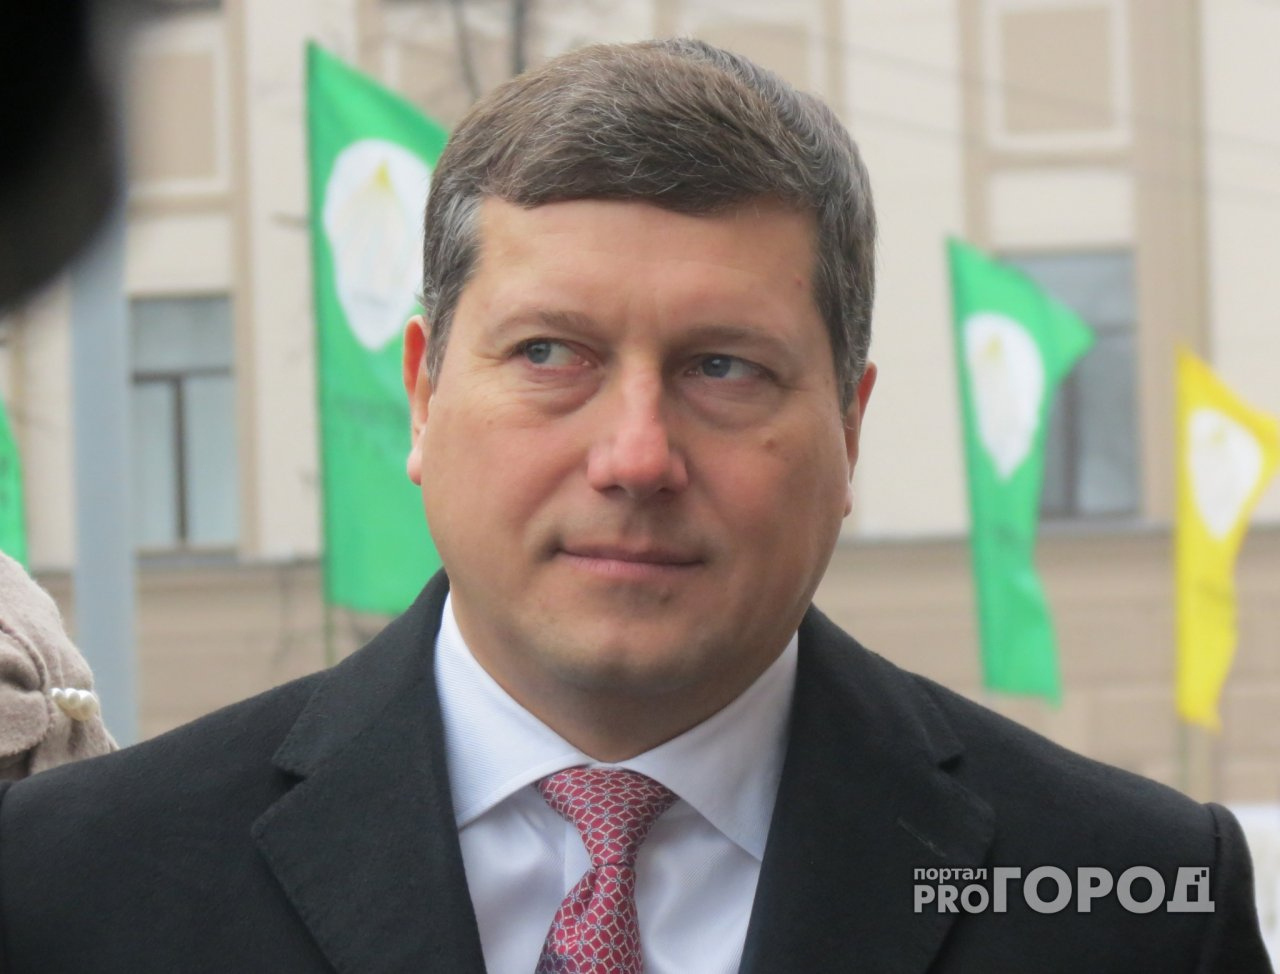 Экс-градоначальнику Нижнего Новгорода Олегу Сорокину продлили арест до 1 декабря